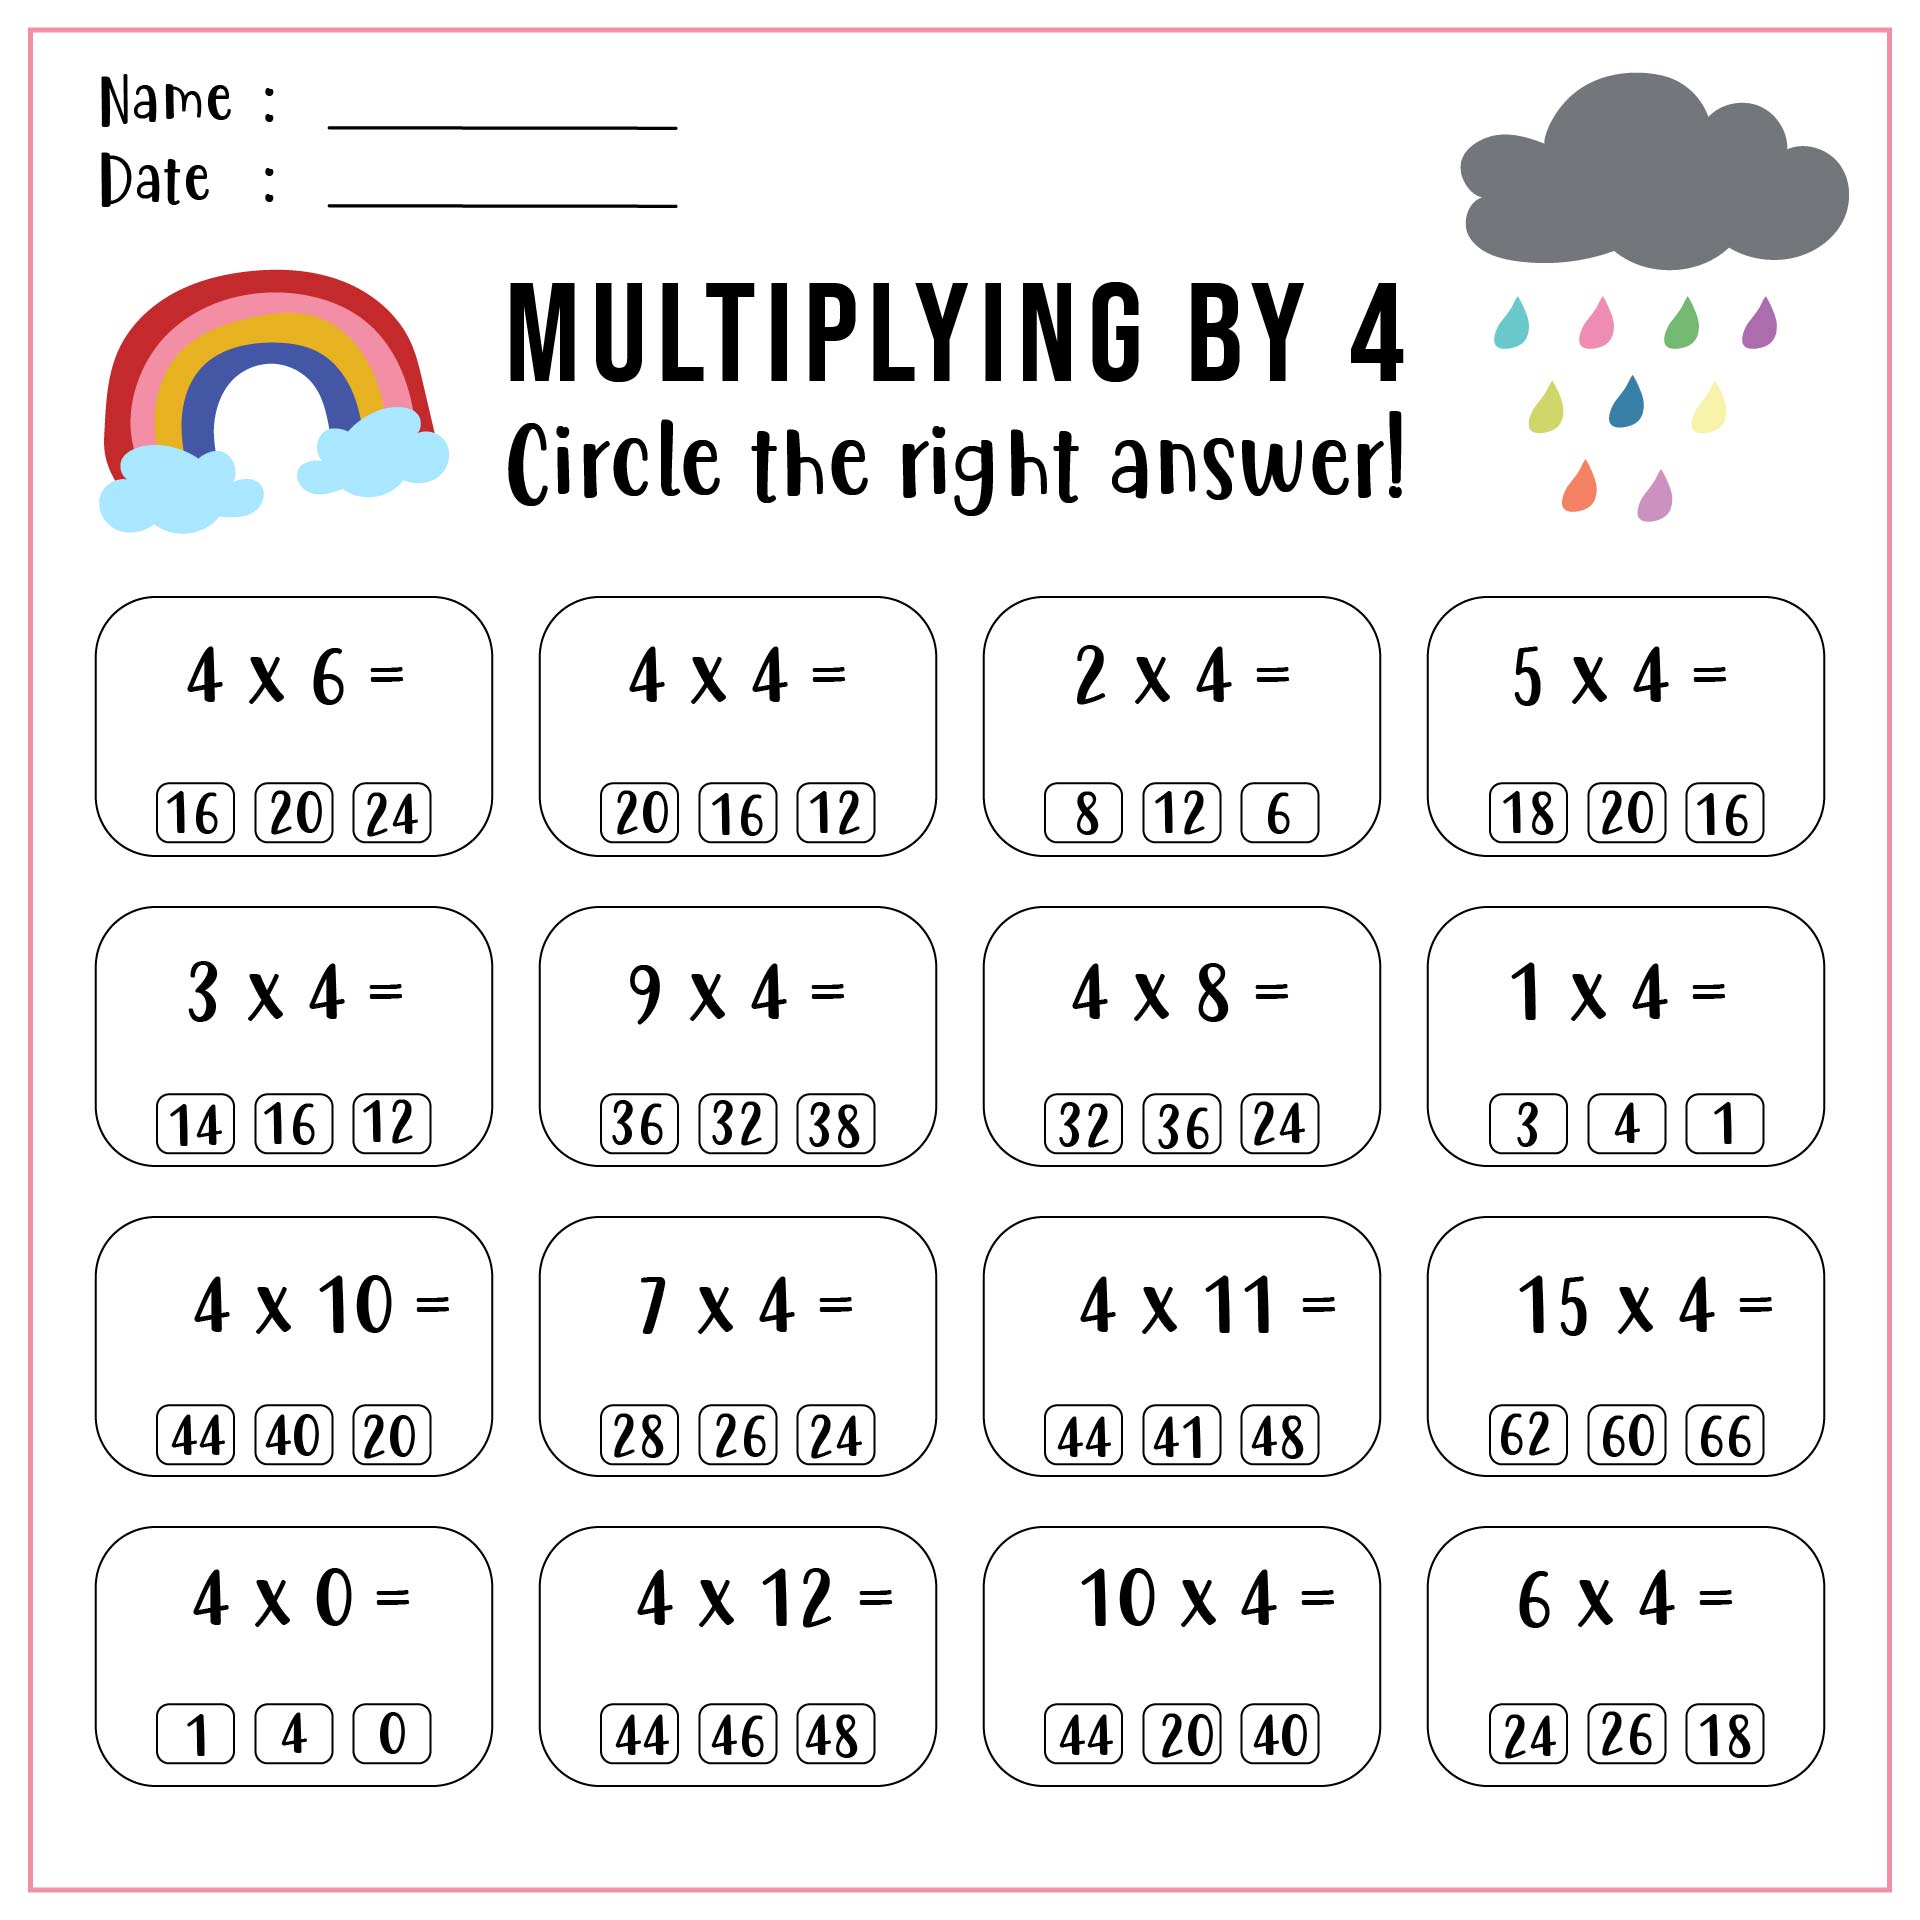 6-best-images-of-multiplication-x4-worksheet-printable-printable-multiplication-worksheets-3